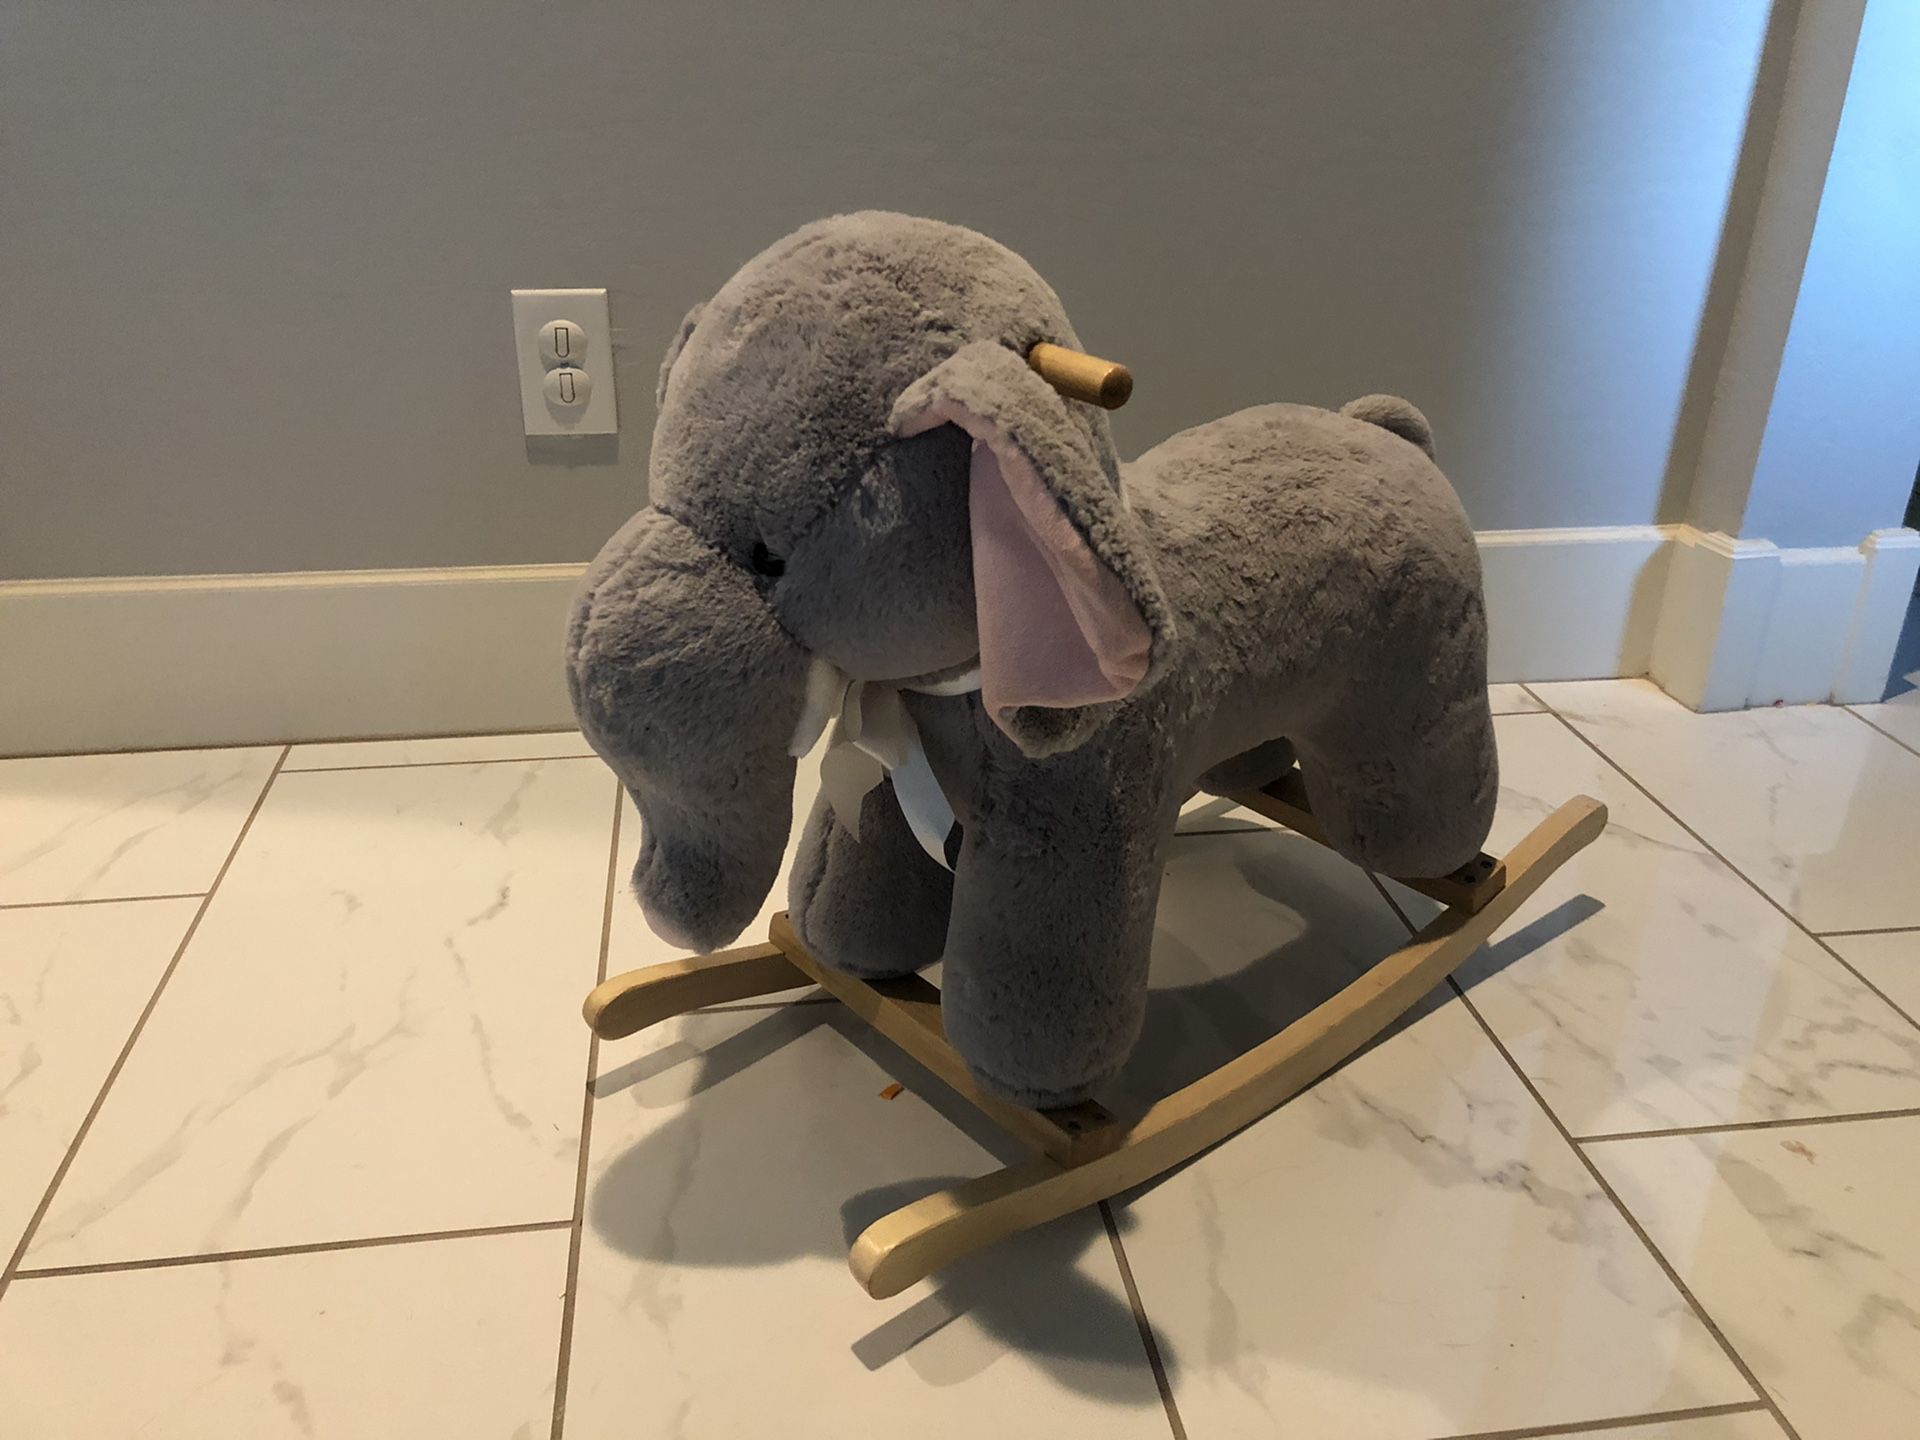 Rocking horse / elephant